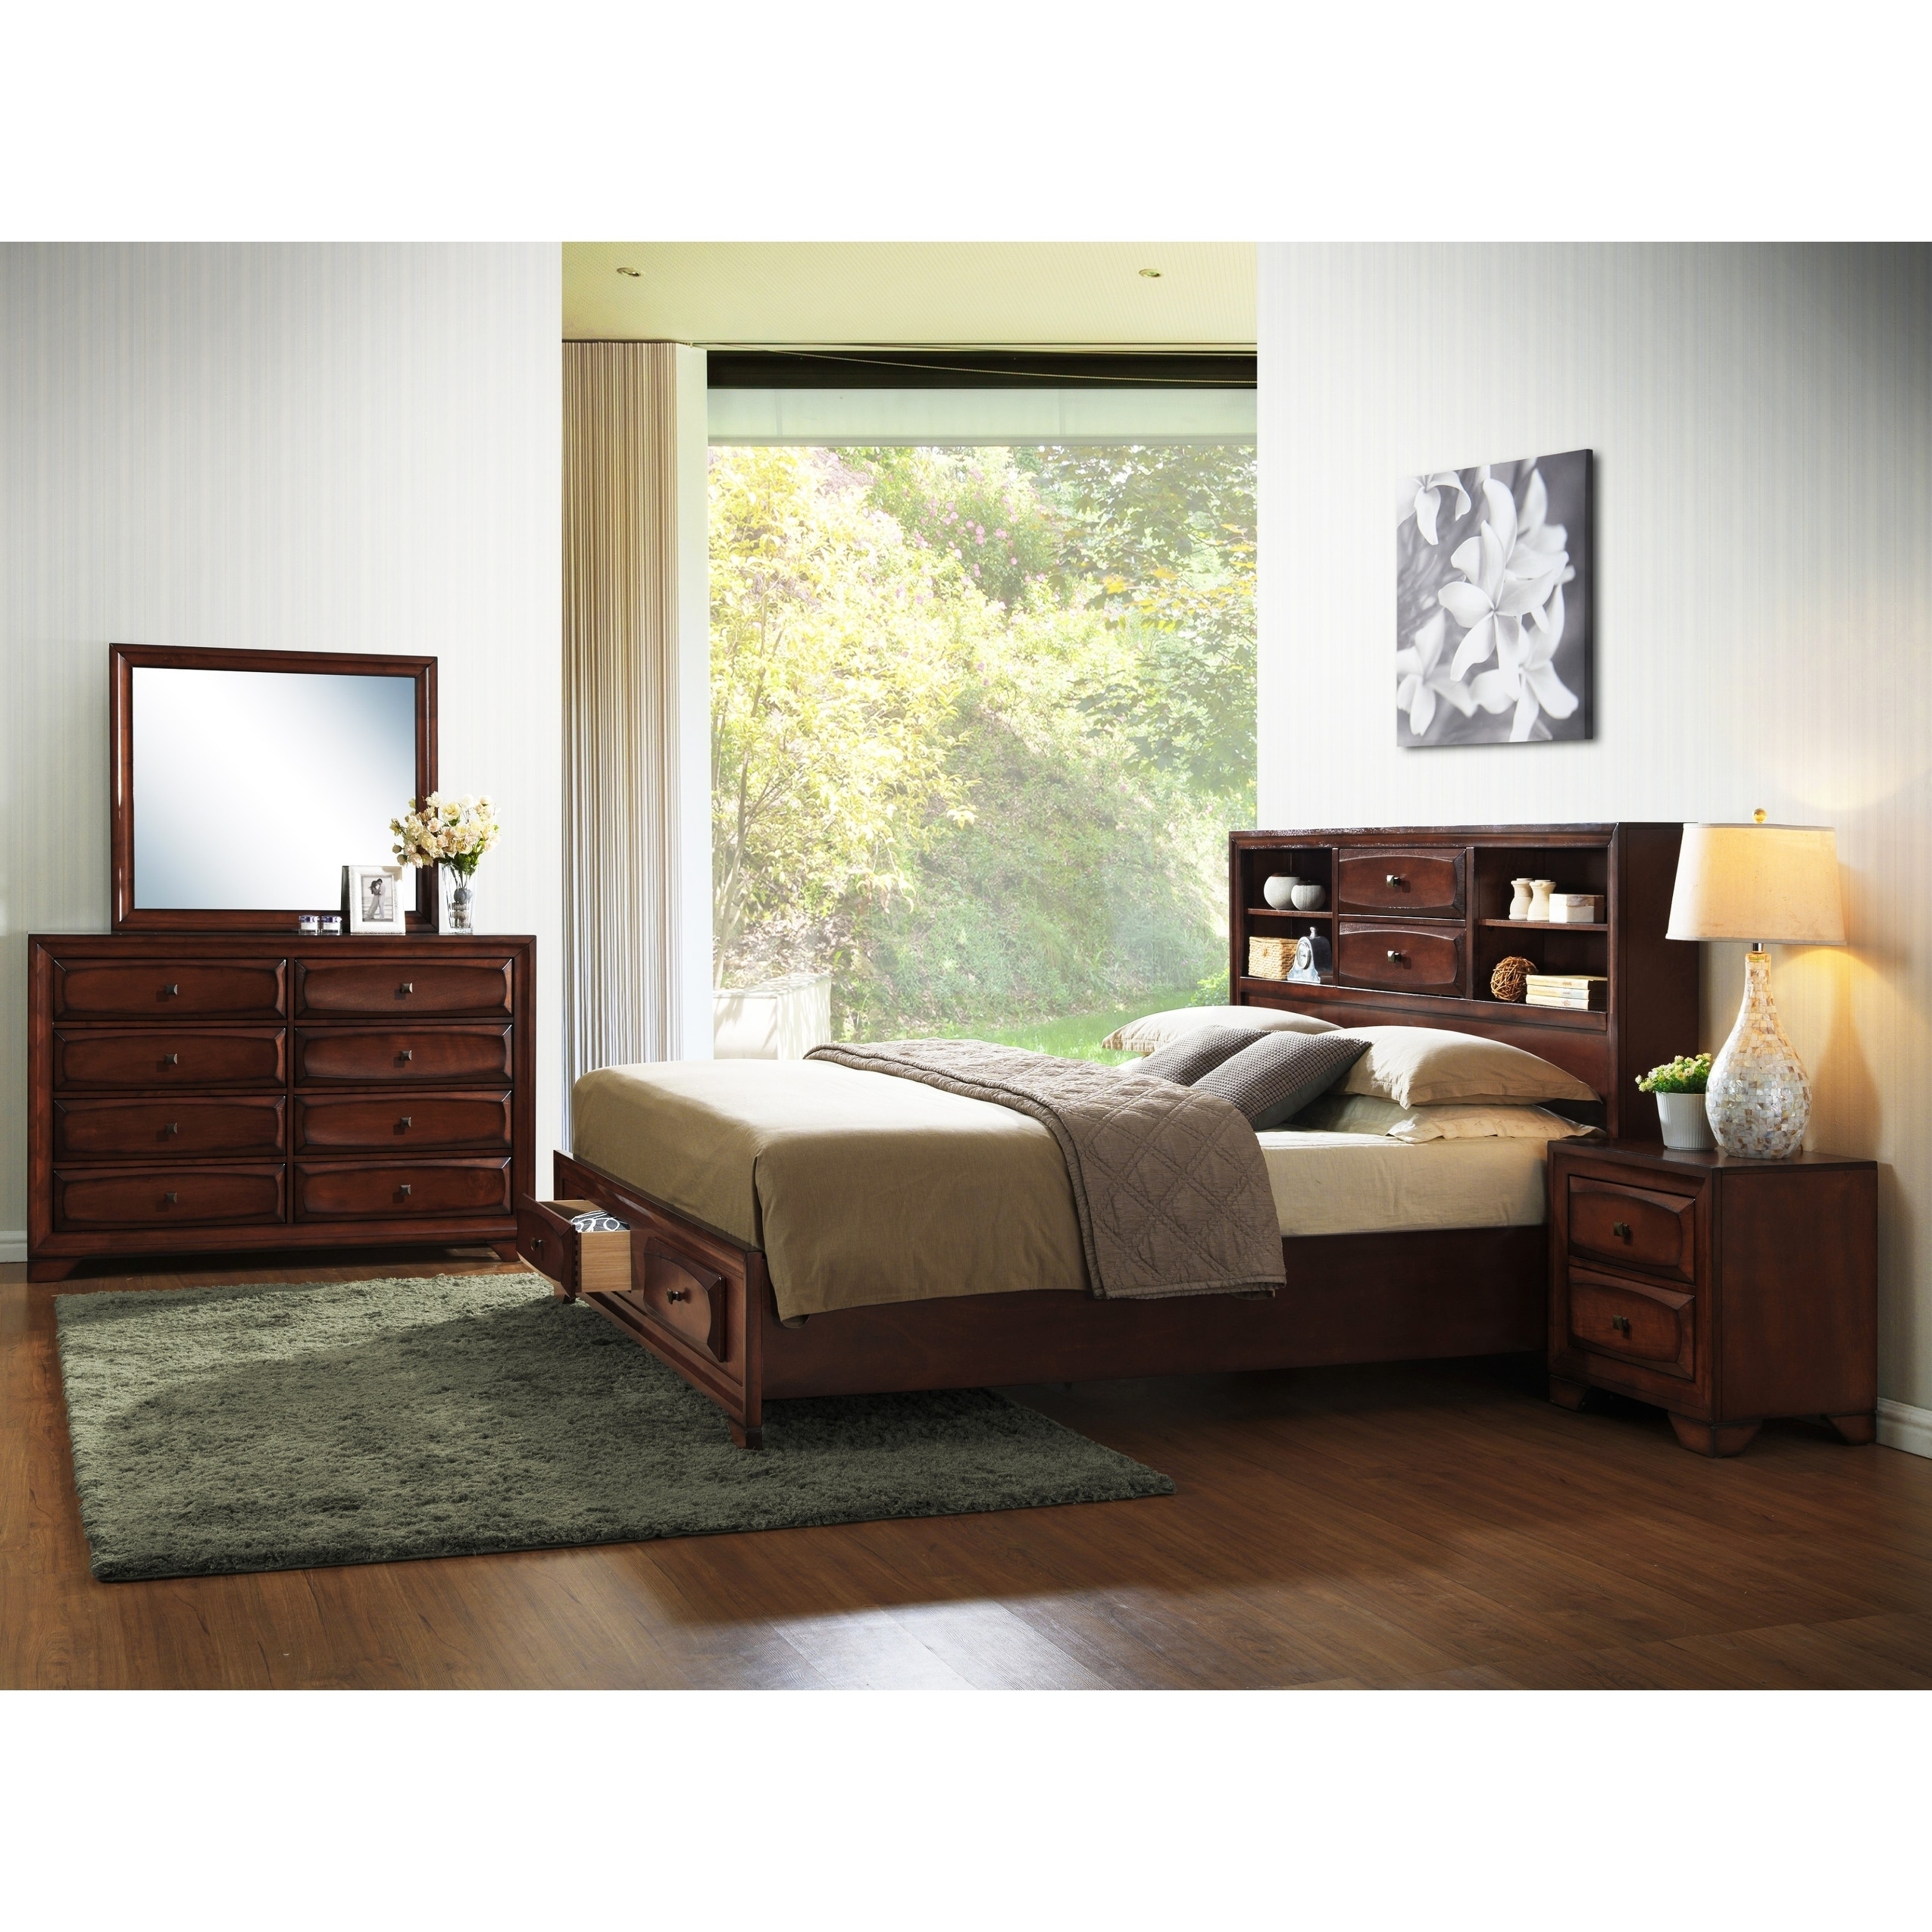 Asger Antique Oak Wood King Size Storage Bedroom Set Overstock 12593993